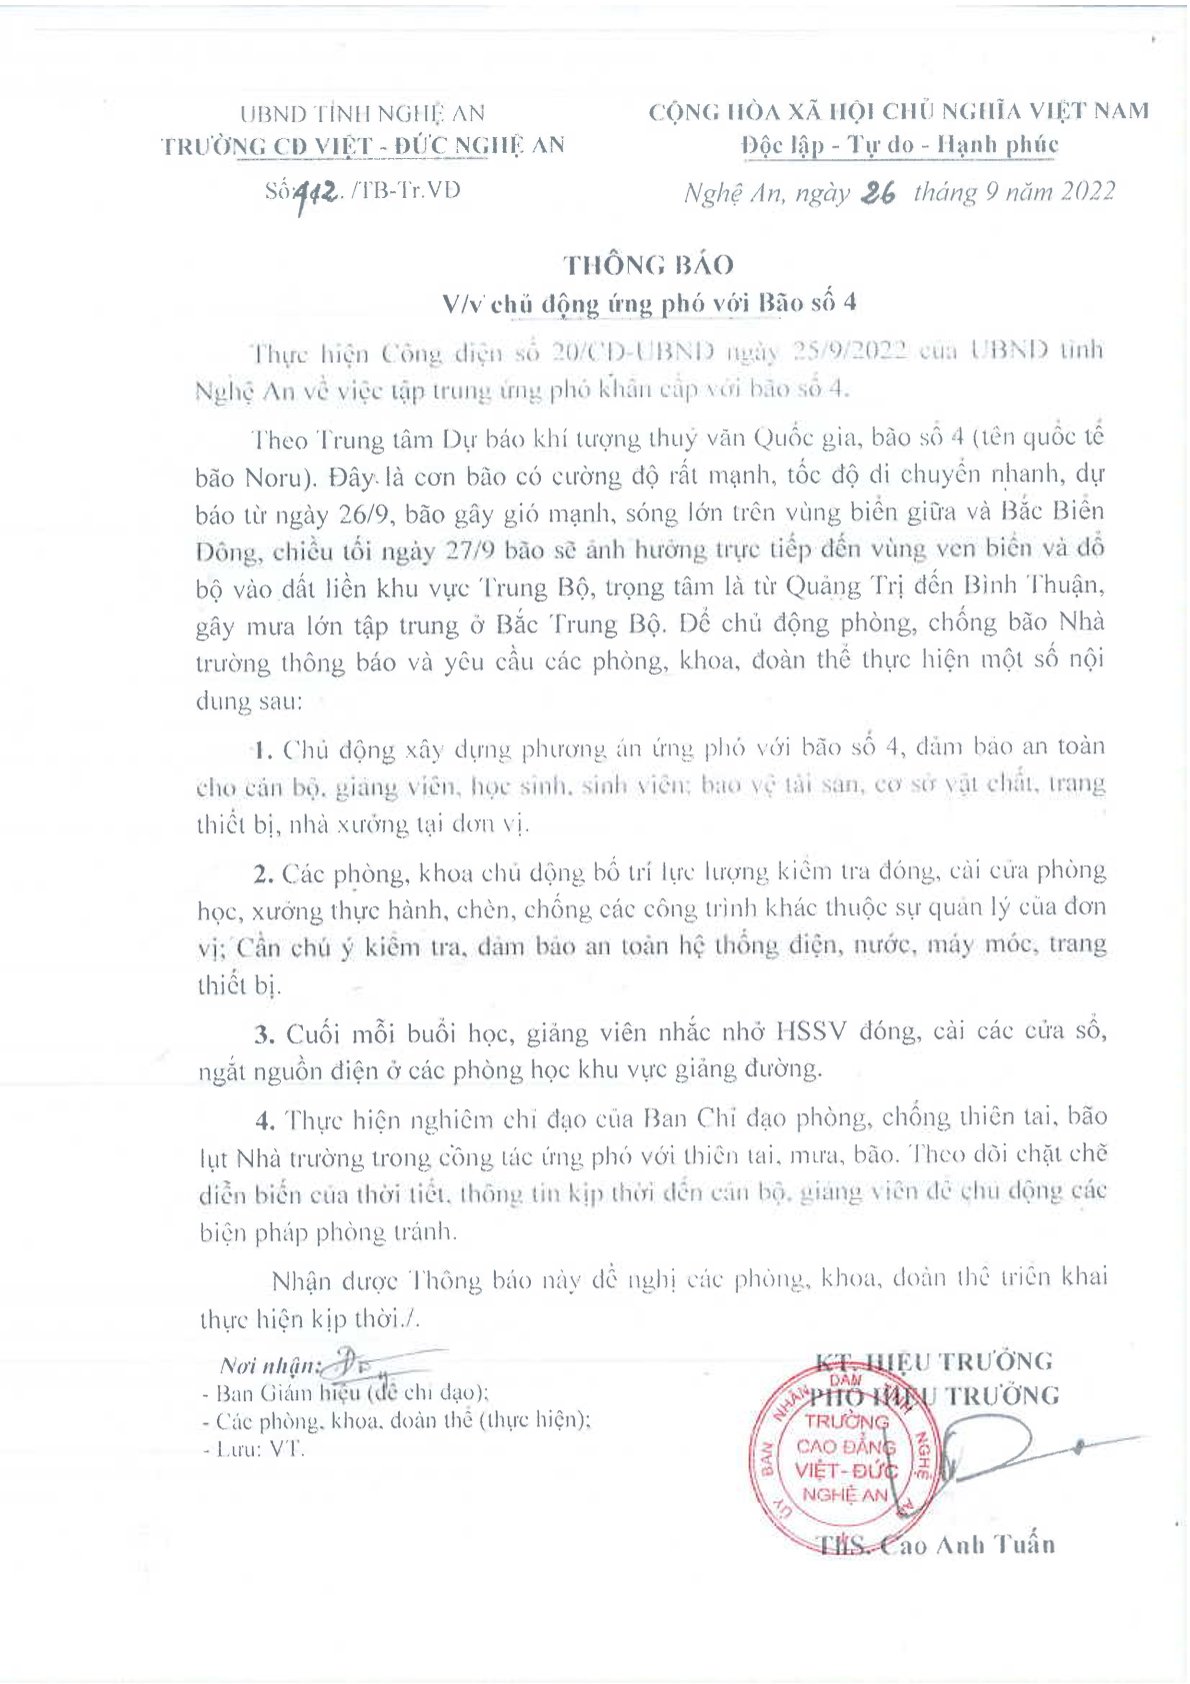 Thông báo số 412/TB-Tr.VĐ ngày 26/9/2022 của Trường Cao đẳng Việt - Đức Nghệ An về việc chủ động ứng phó với Bão số 4